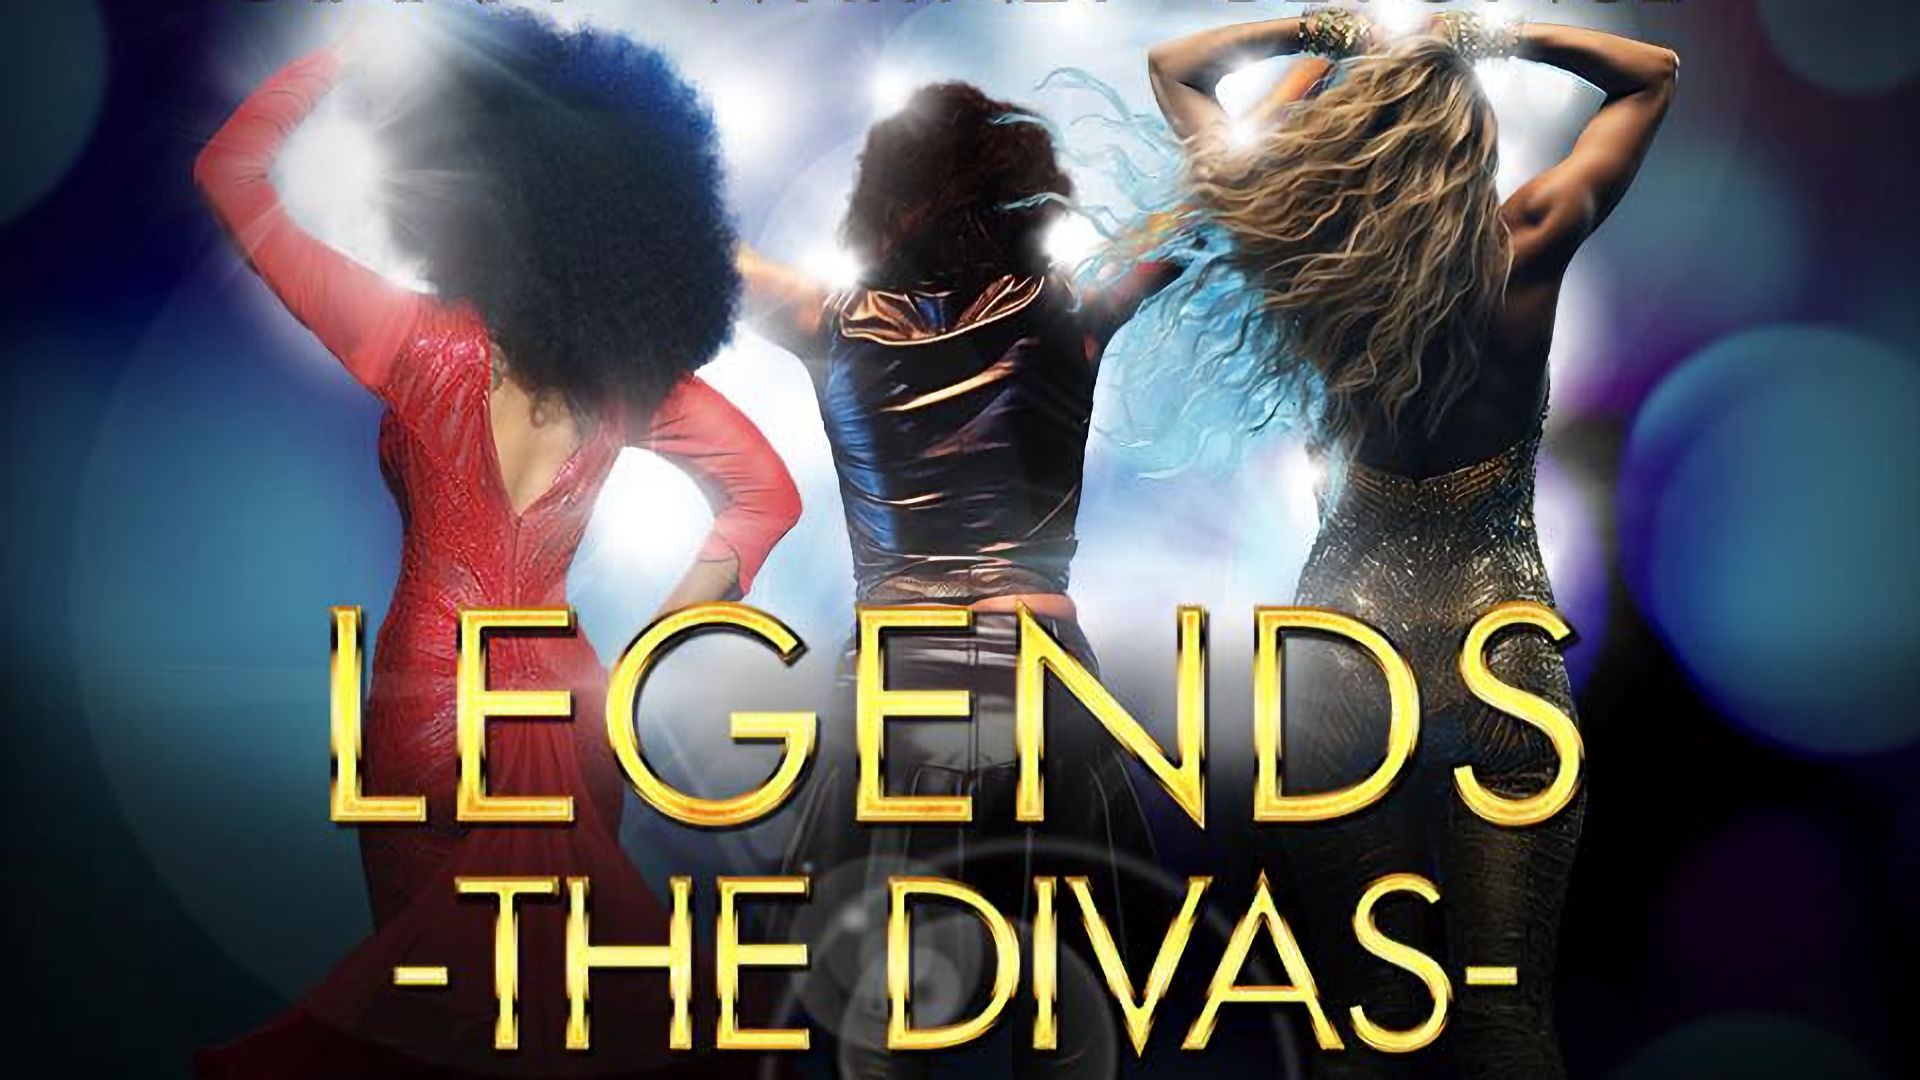 Legends - The Divas